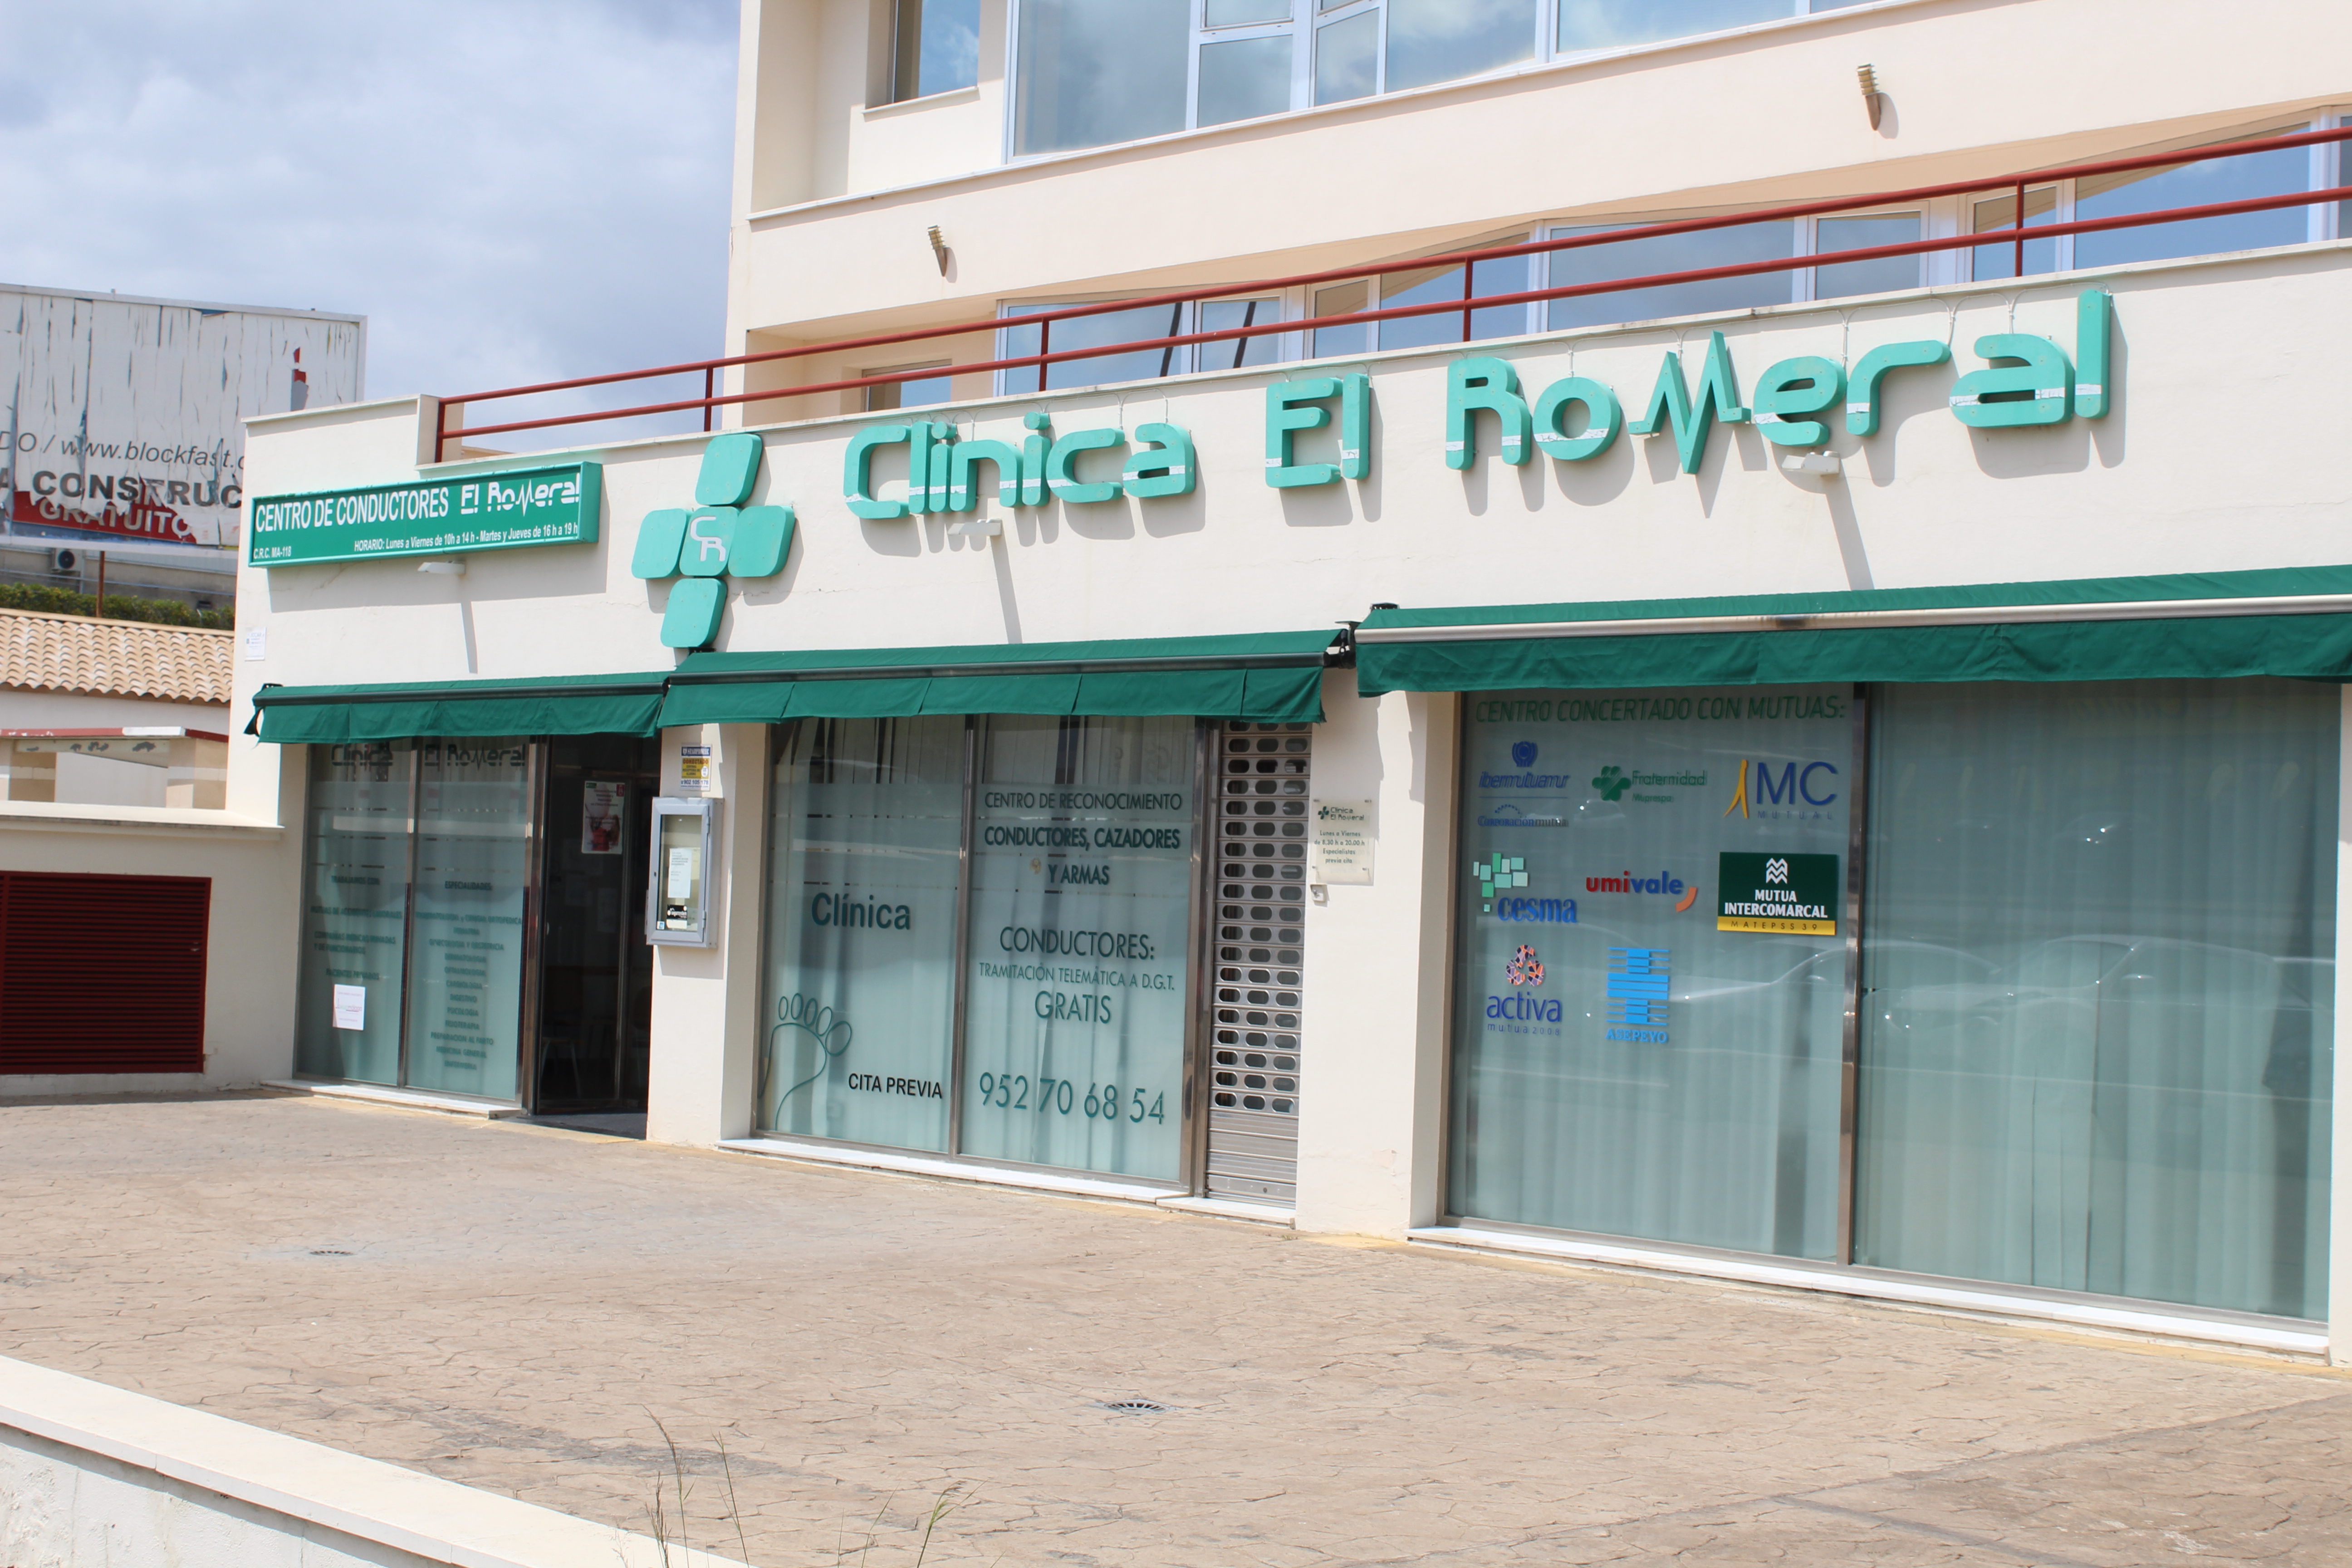 Clínica El Romeral presta asistencia sanitaria gratuita si sufres un accidente de tráfico en Antequera y comarca